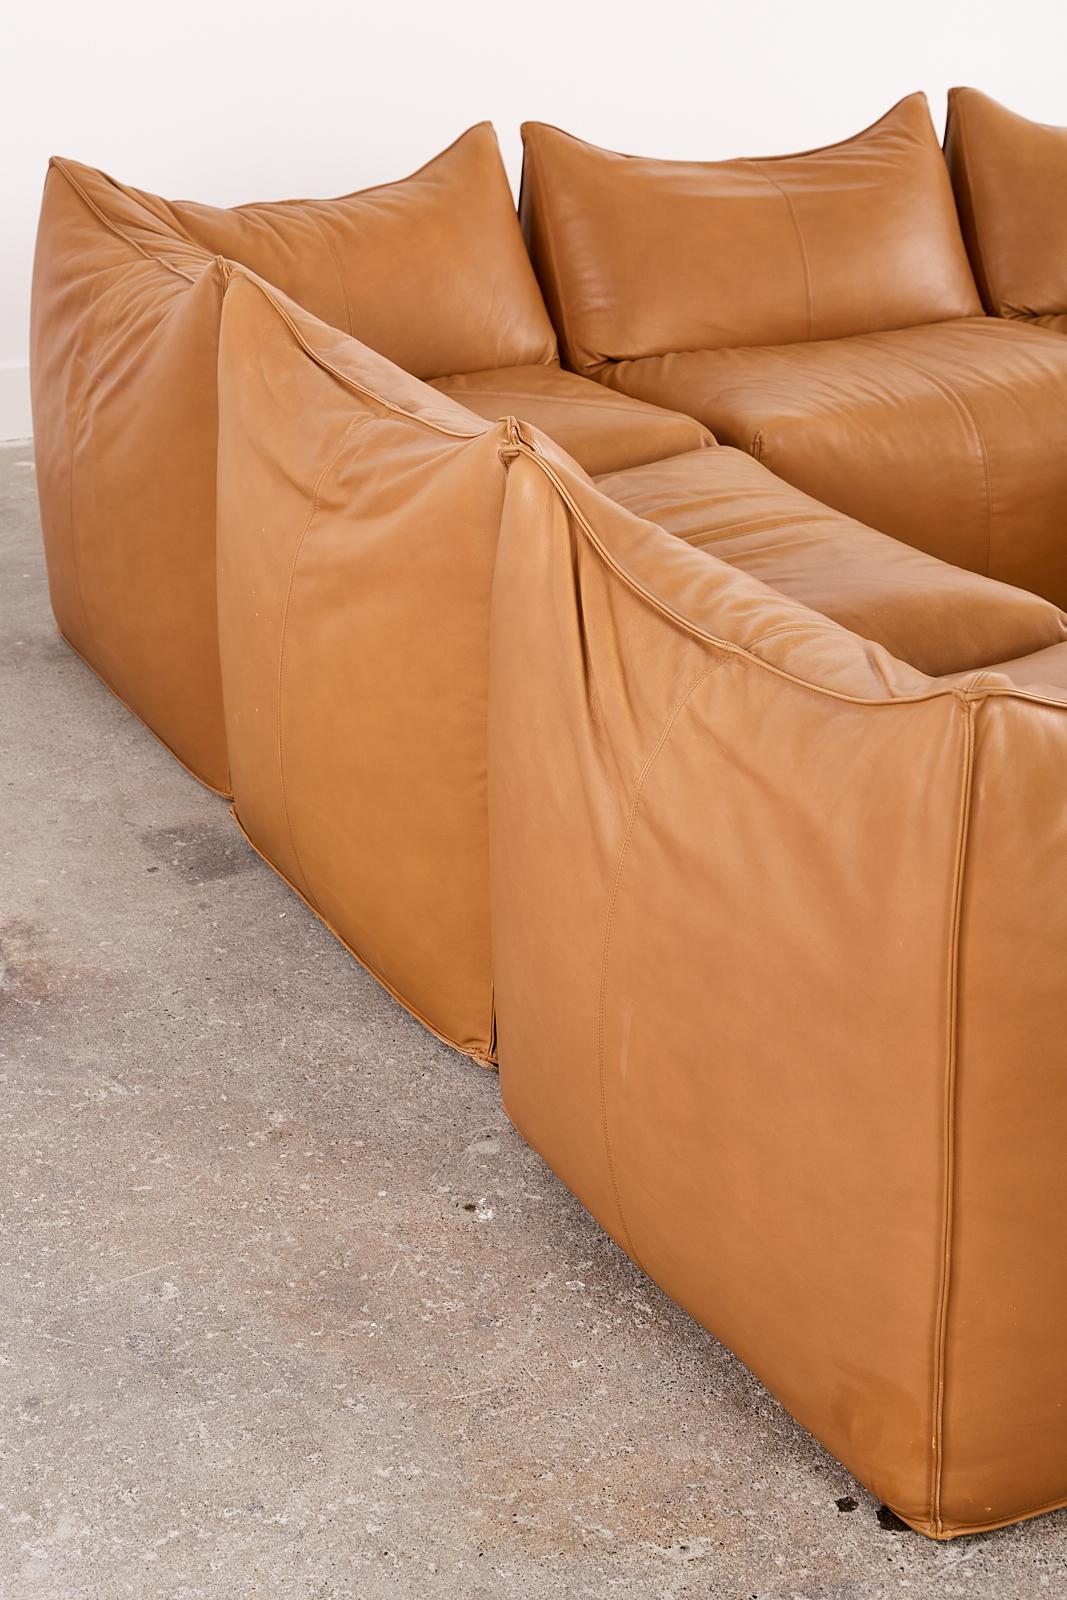 Bambole Leather Sectional Sofa by Mario Bellini for B + B Italia 4